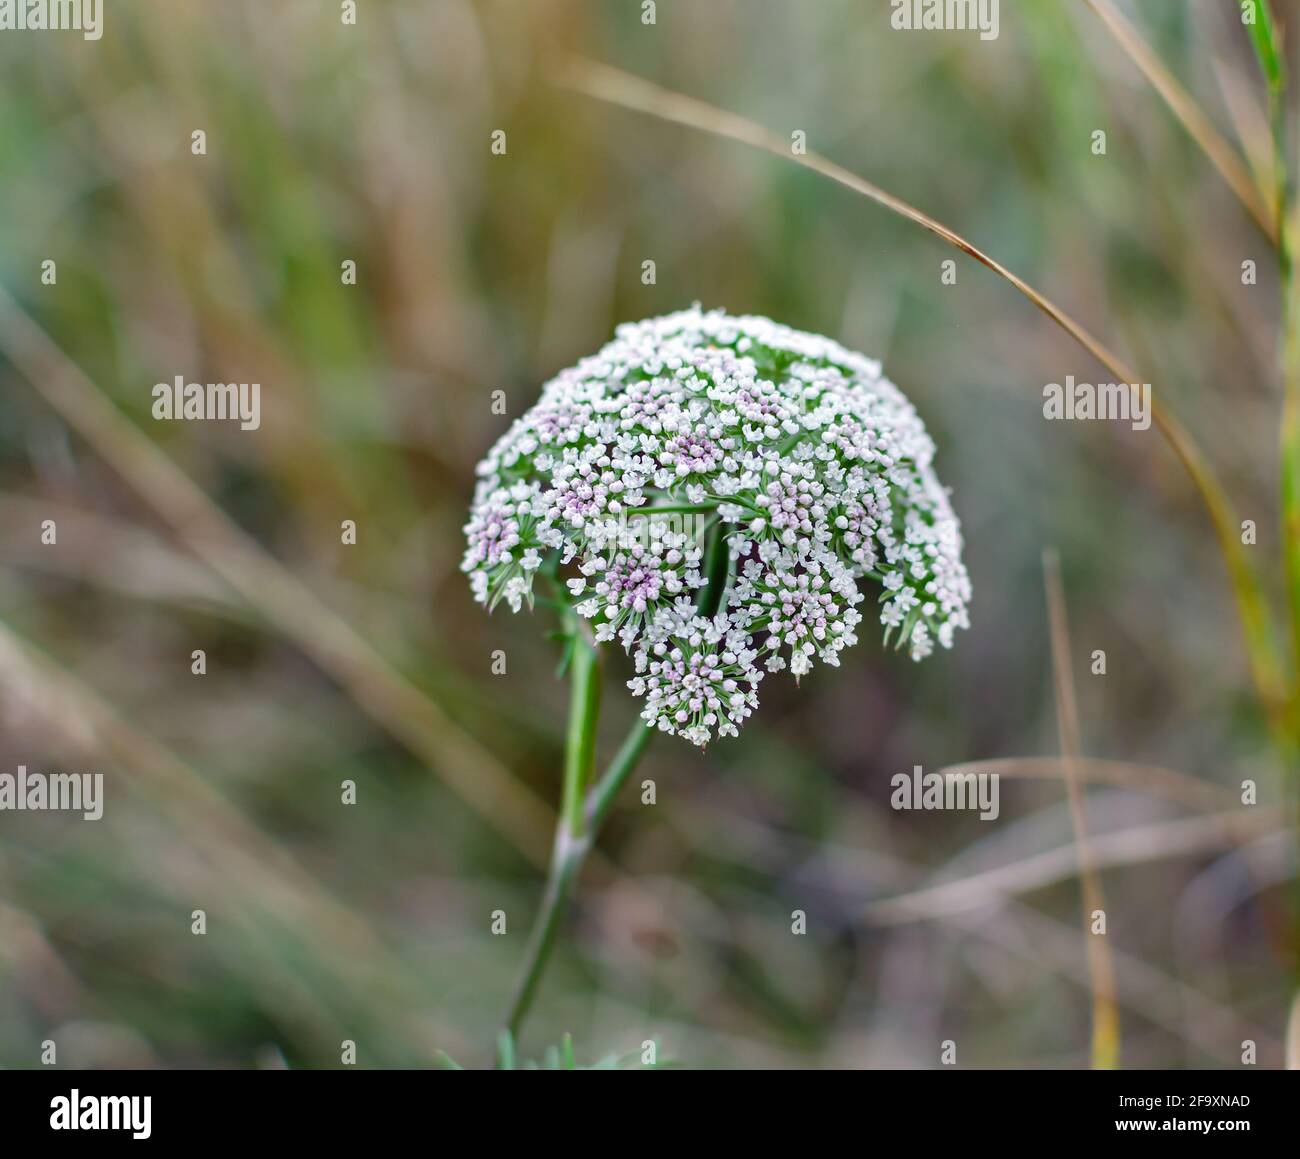 Weiße Blüten im Regenschirm-Blütenstand, Wiese wilde Pflanze auf einem  Hintergrund von grünem Gras Stockfotografie - Alamy